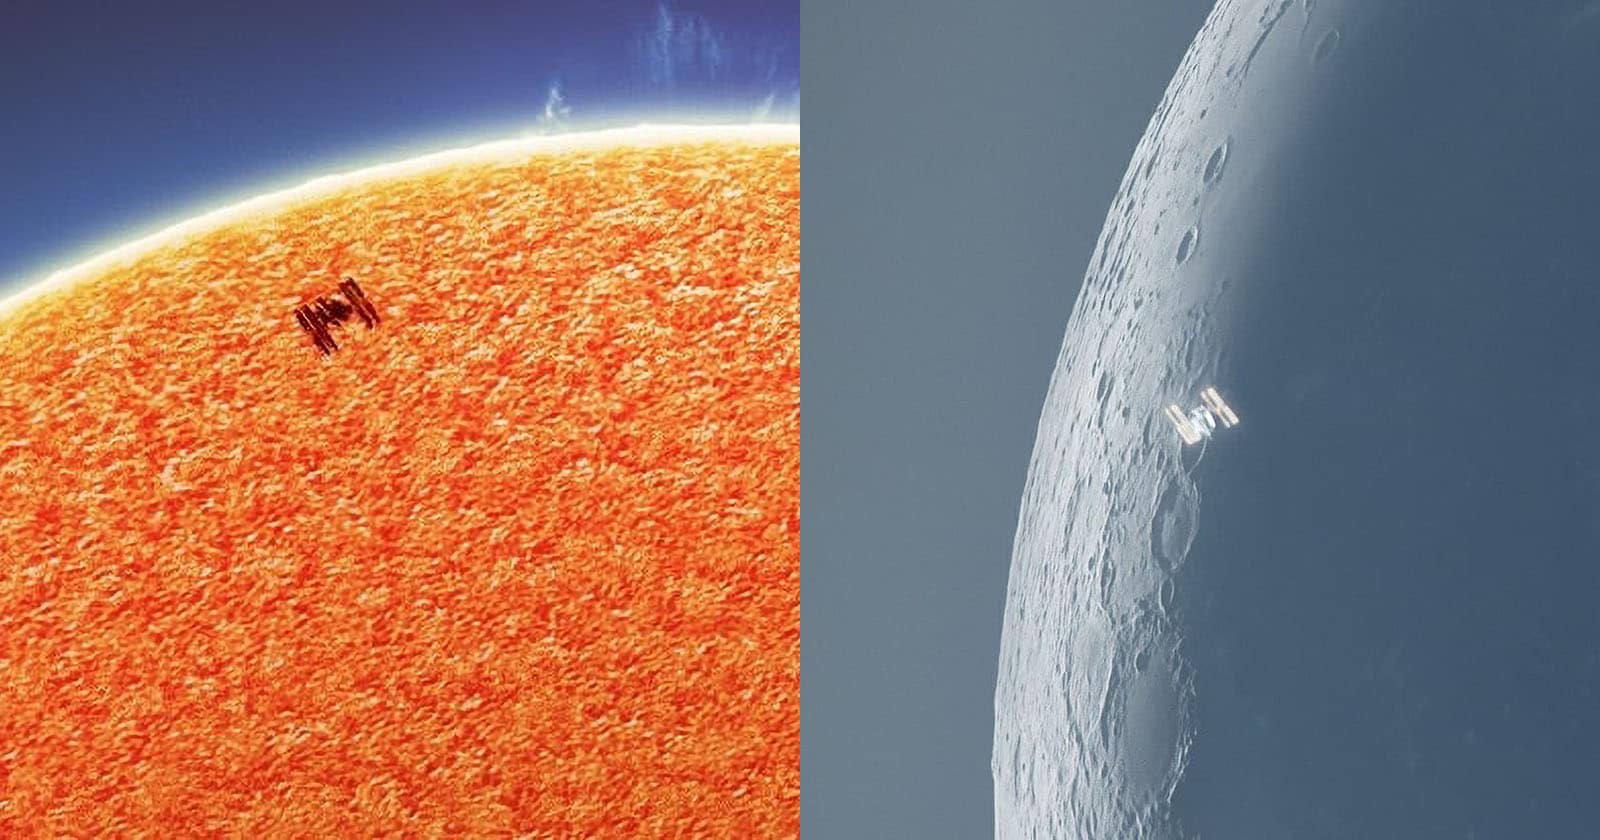 Nhiếp ảnh gia đã bắt được khoảnh khắc Trạm Không gian Quốc tế bay qua Mặt Trăng và Mặt Trời